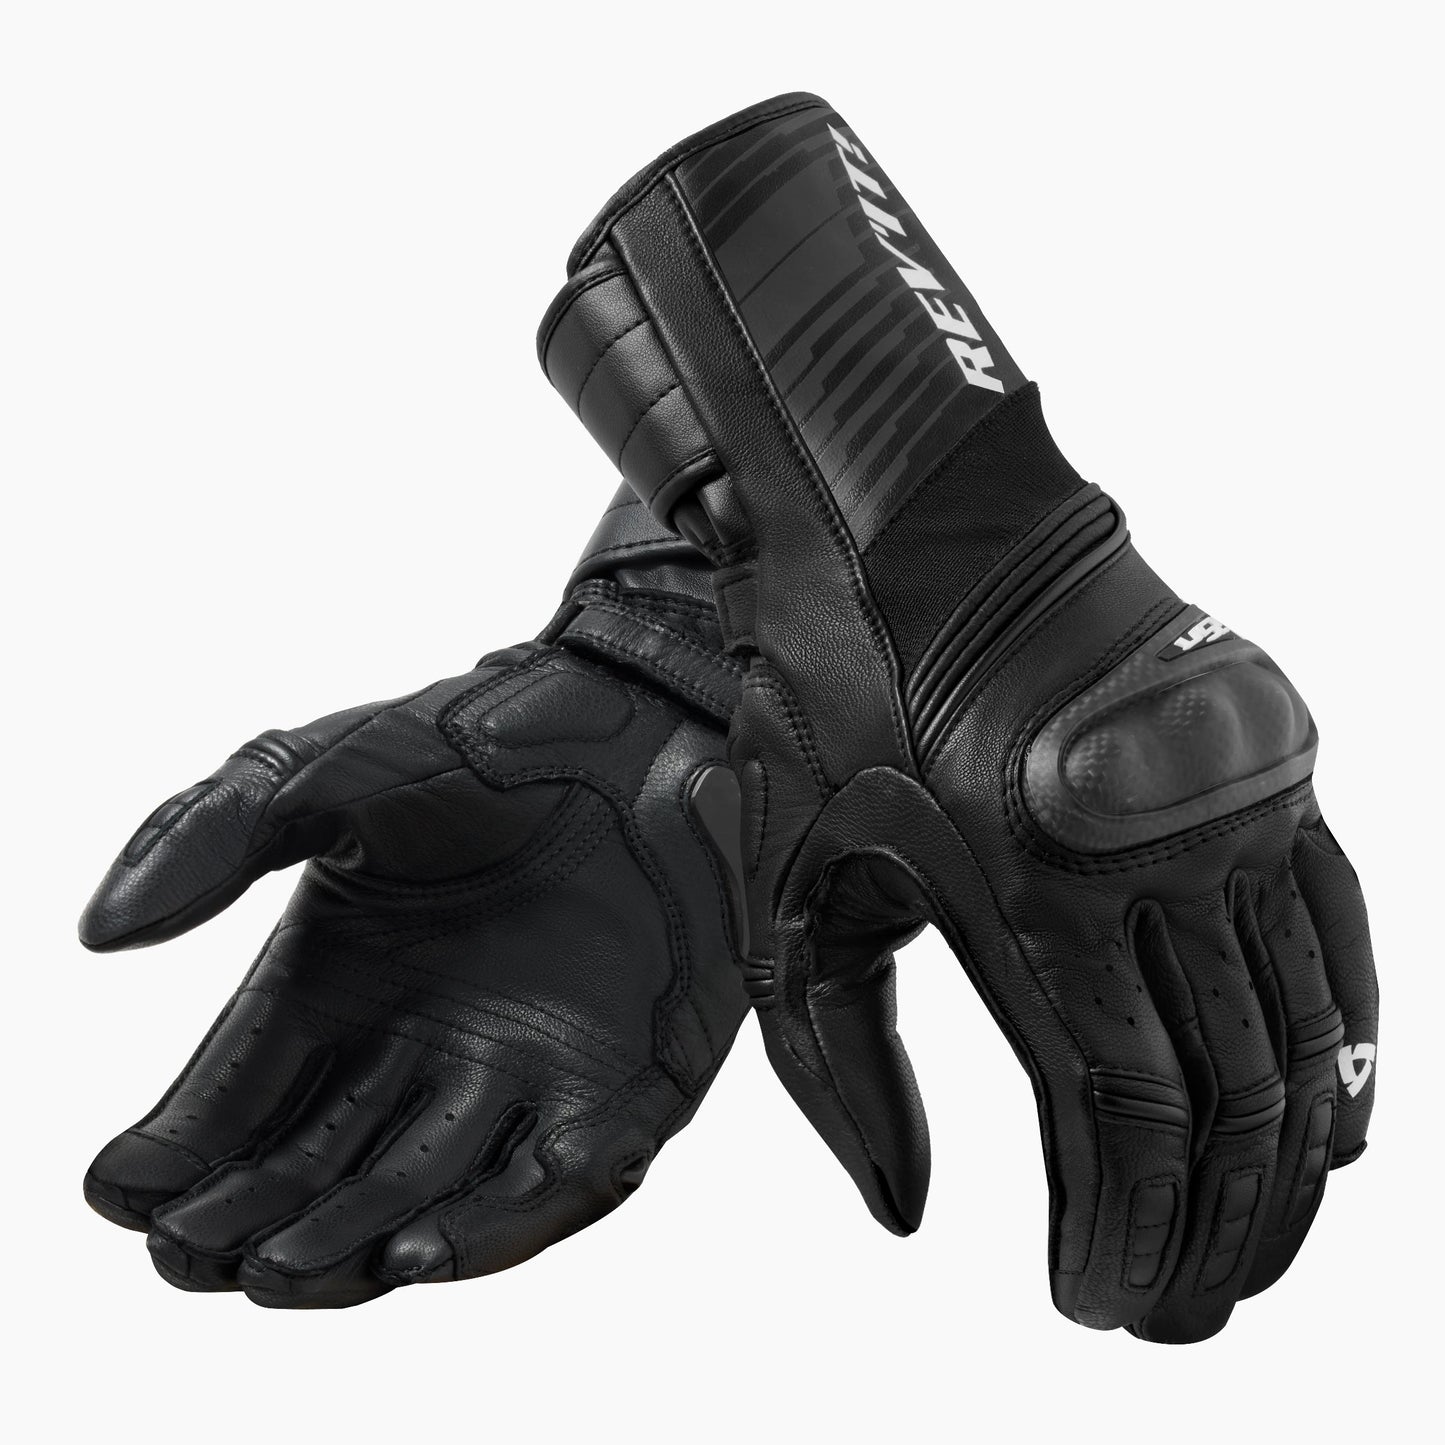 REV'IT RSR 4 Gloves